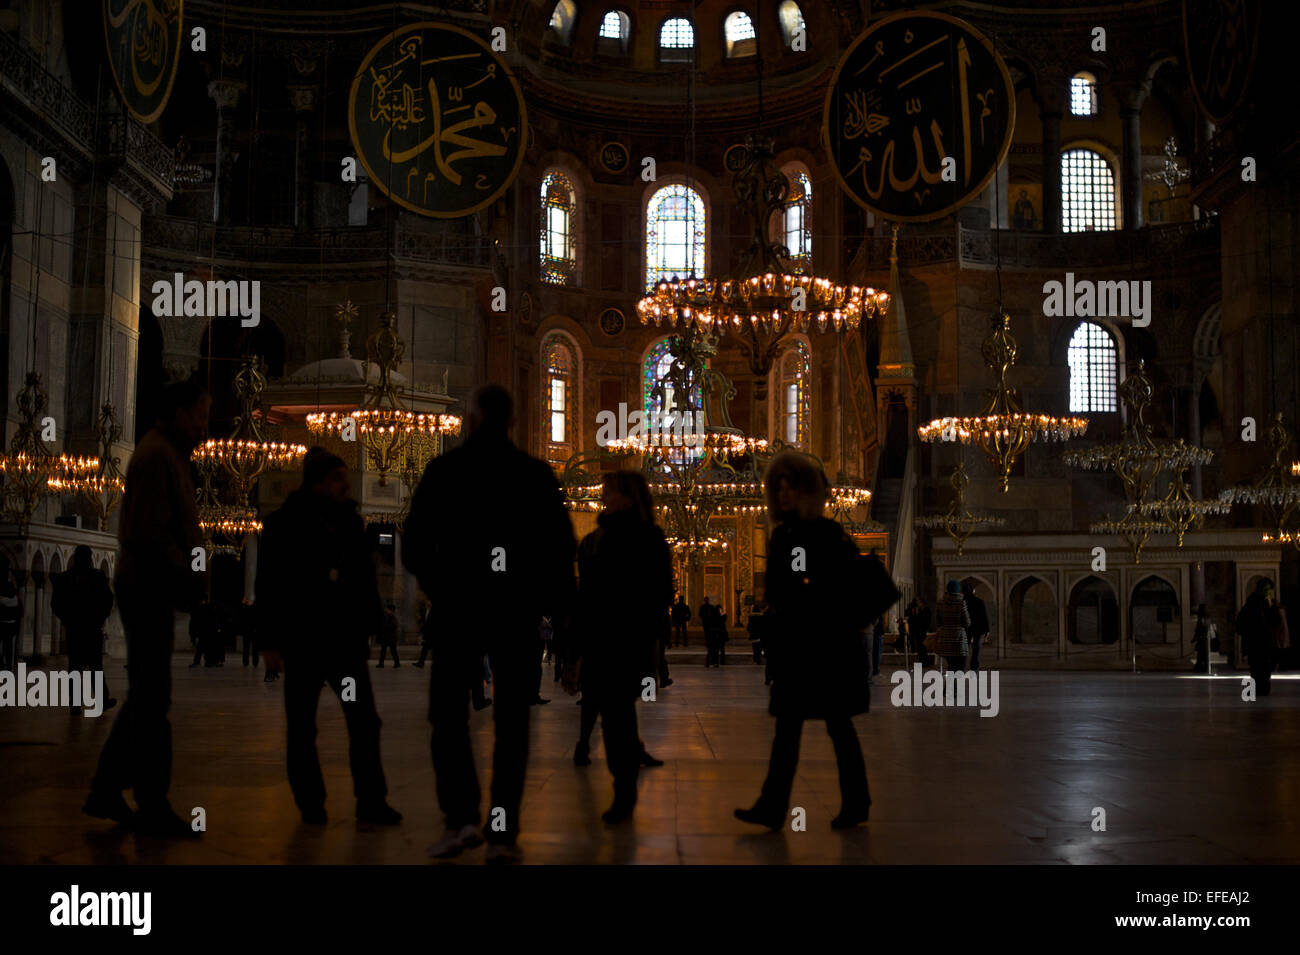 L'intérieur de l'Hagia Sofia (aka Aya Sofya) est représenté dans le cadre d'un reportage photo sur l'hiver à Istanbul, Turquie. Banque D'Images